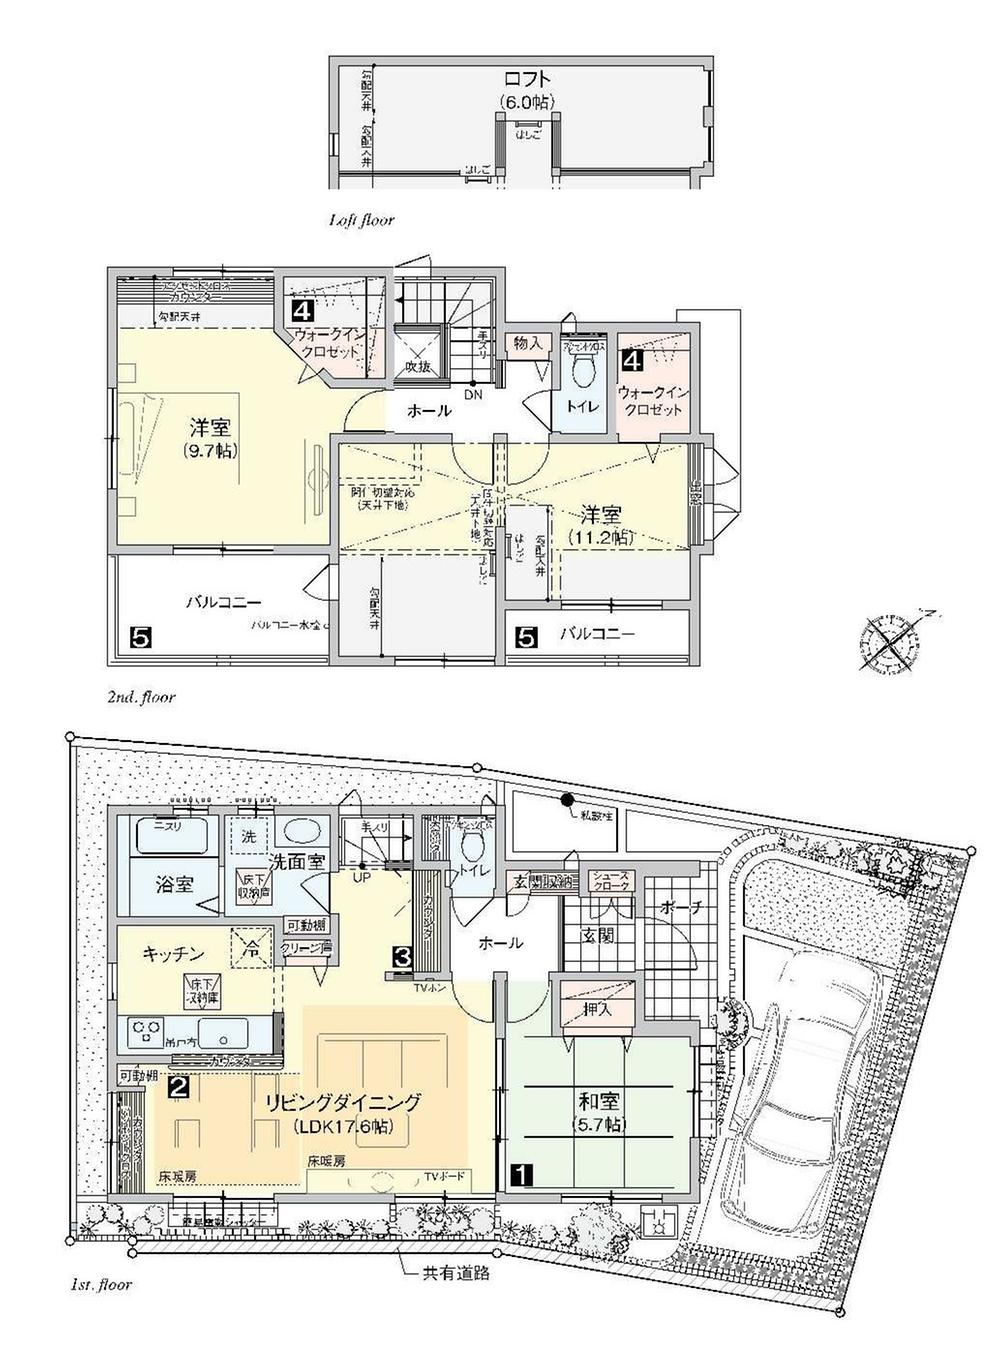 Other. "1 Building" floor plan